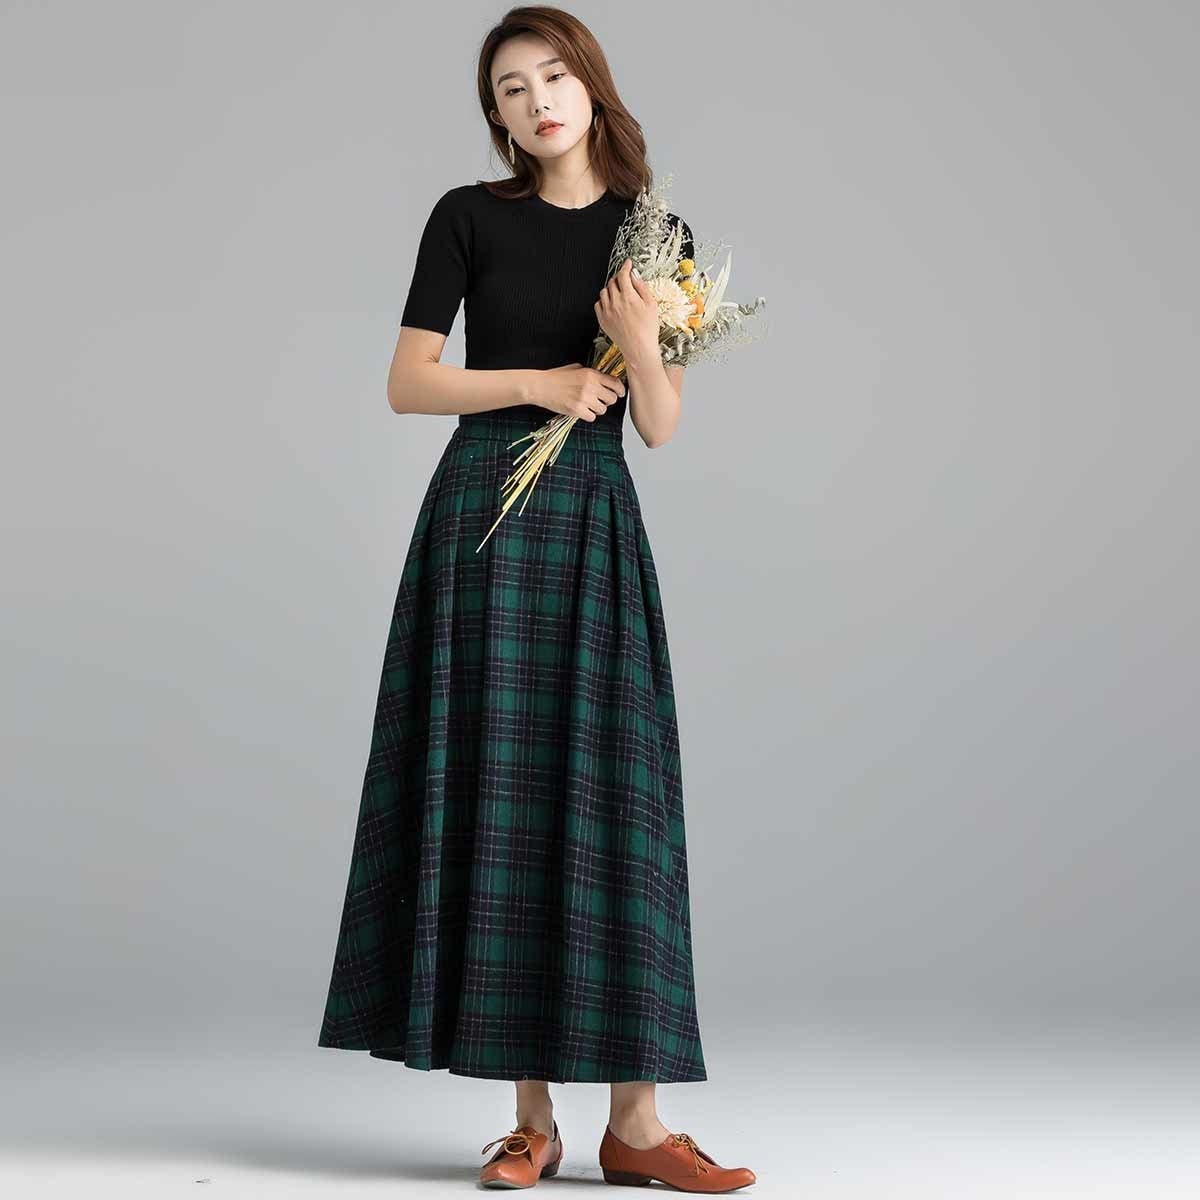 Wool Skirt A Line Maxi Skirt Winter Skirt Women Long Skirt | Etsy